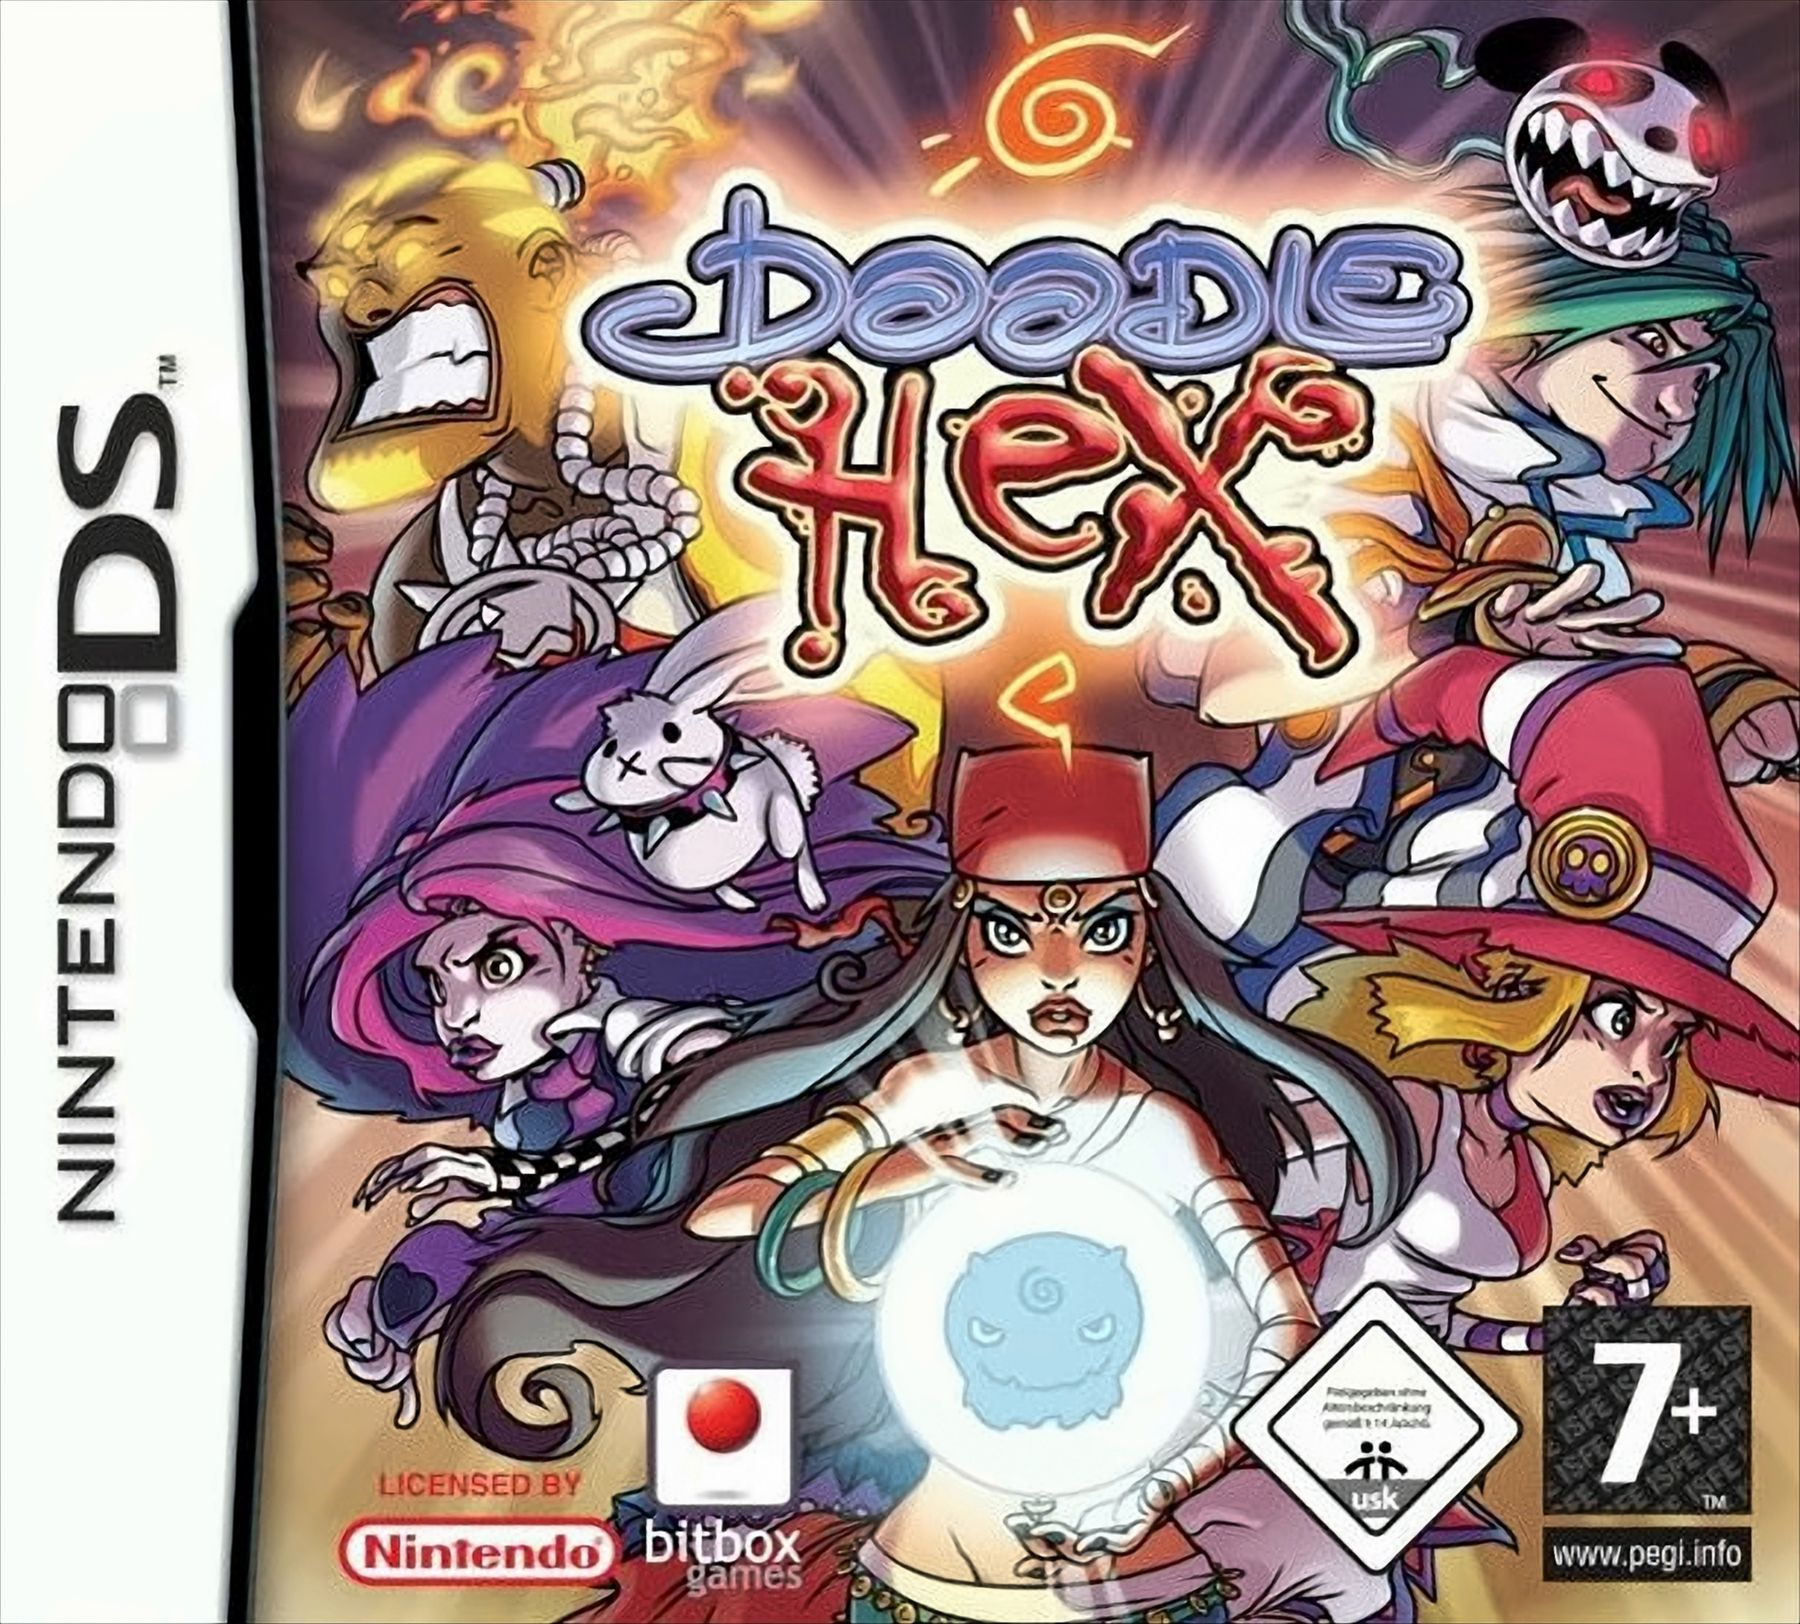 Doodle Hex - [Nintendo DS